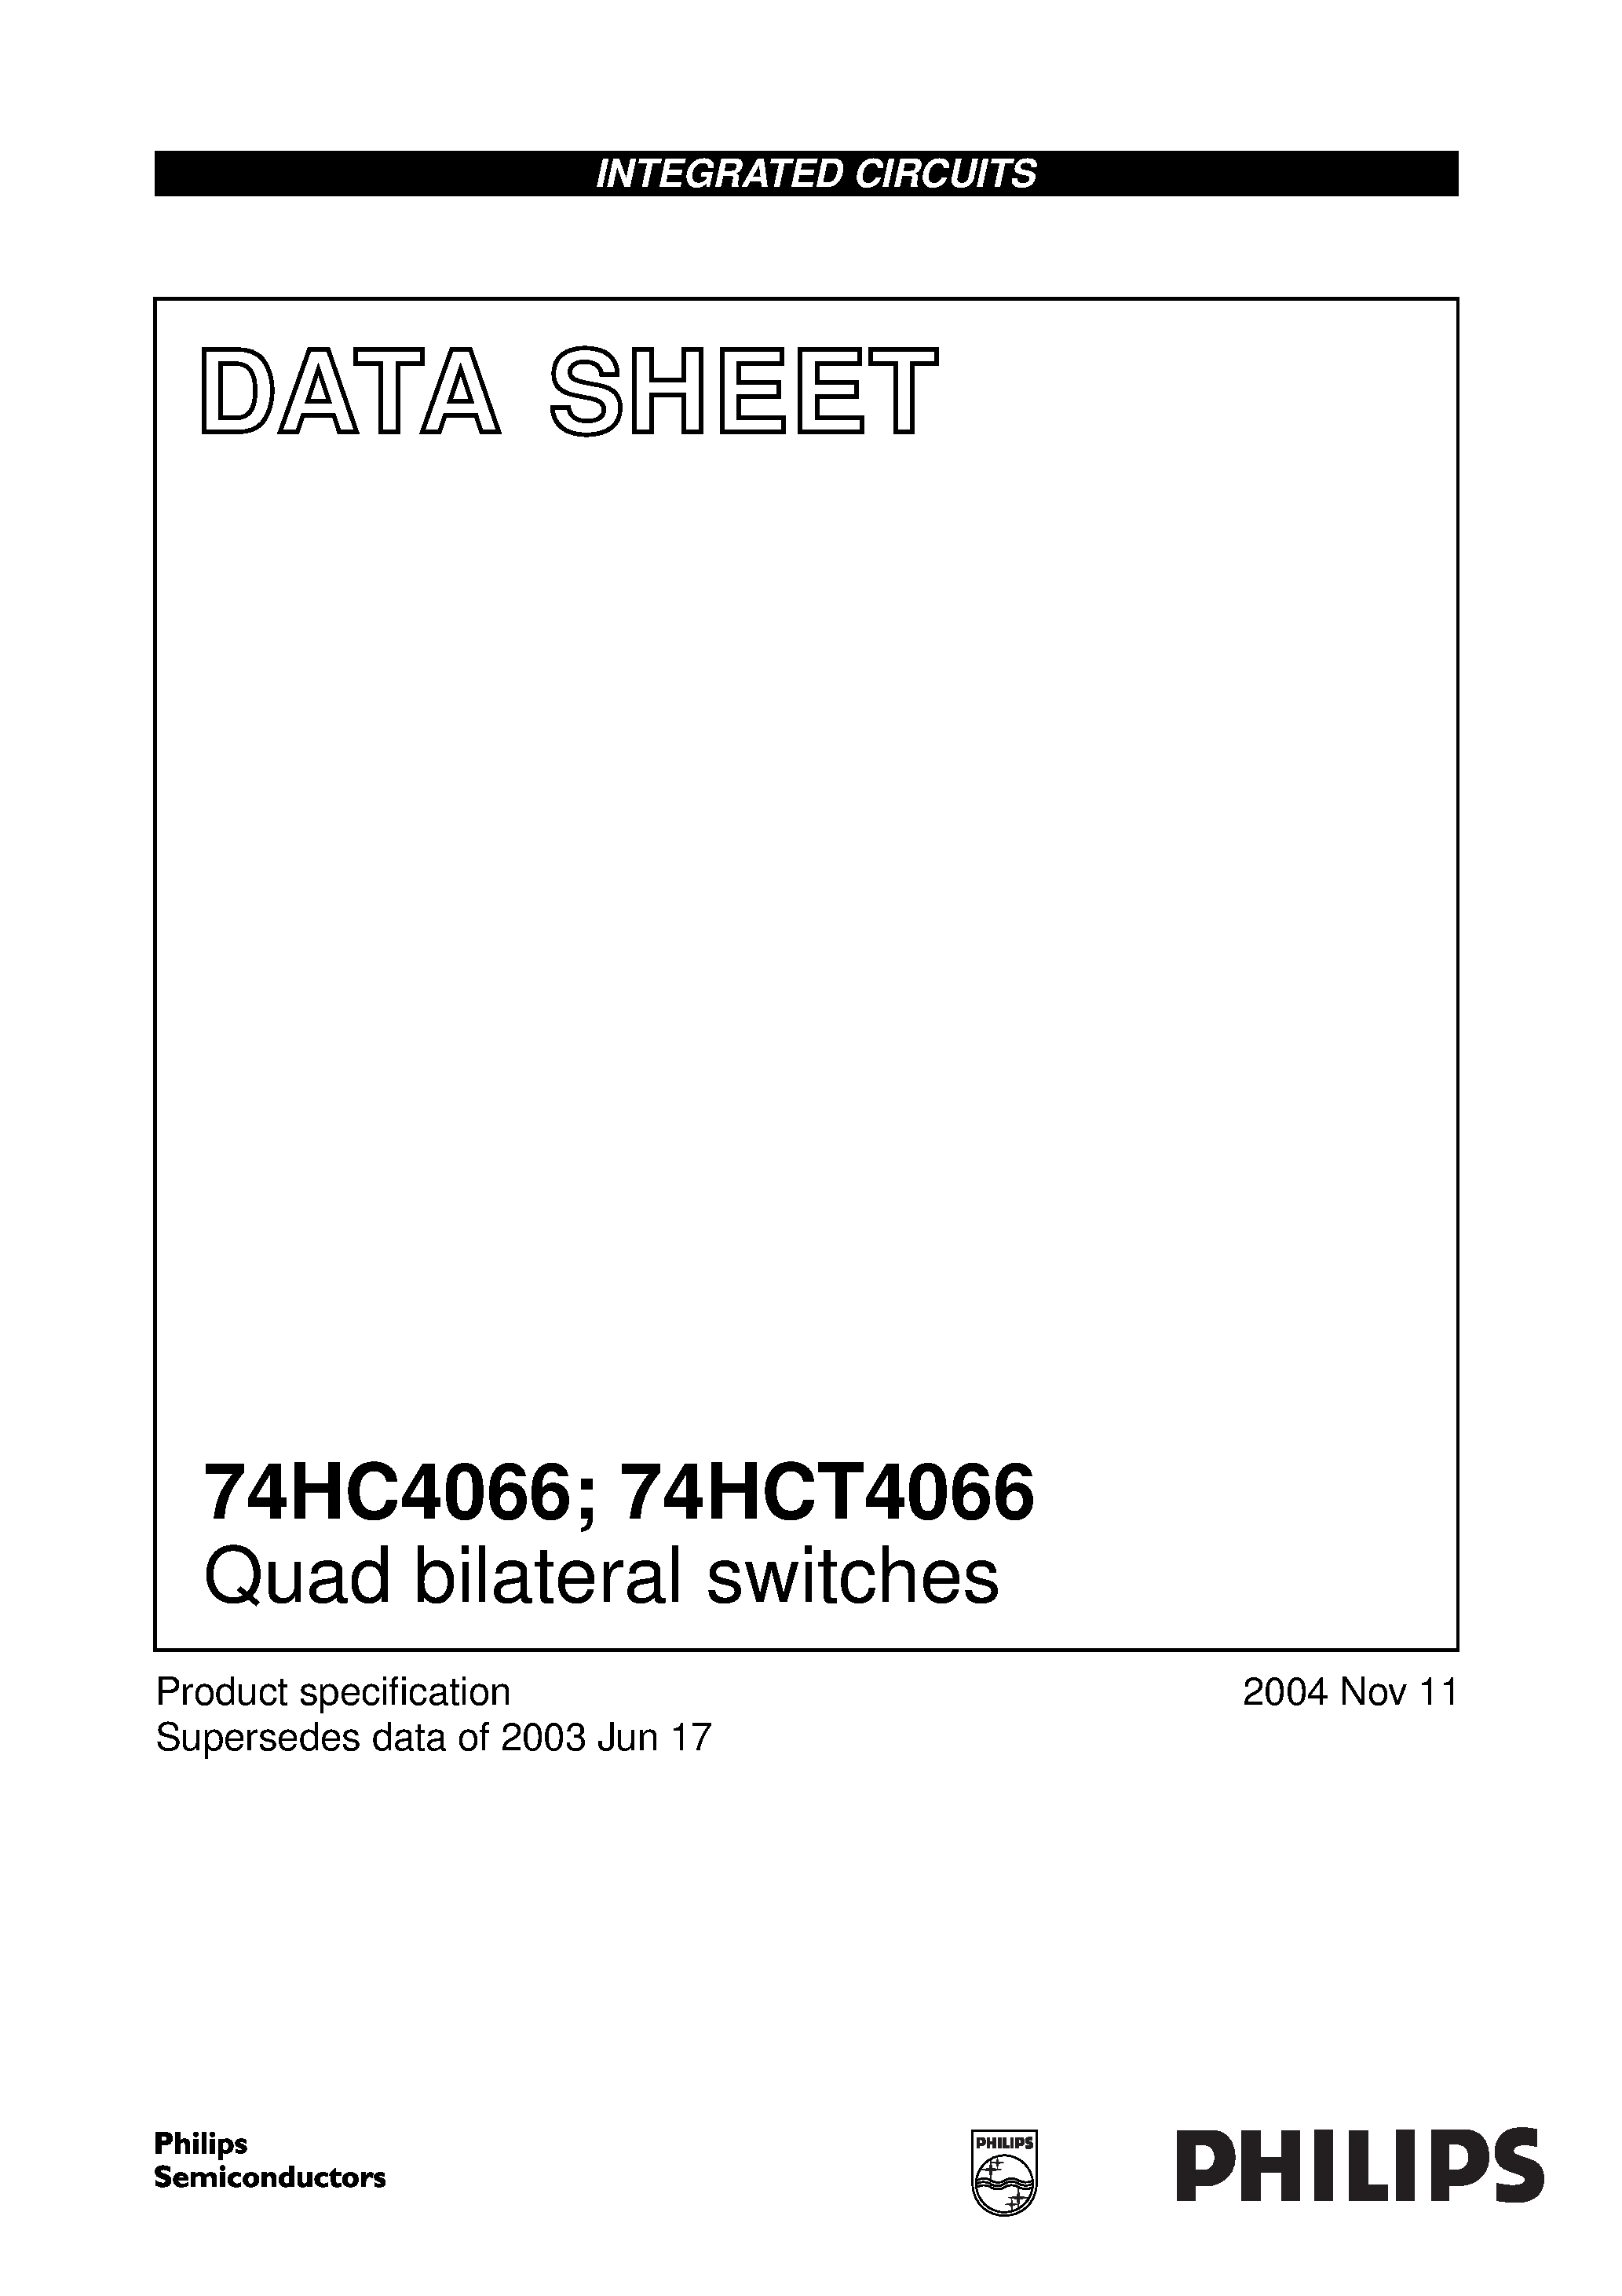 Даташит 74HC4066BQ - (74HC4066x) Quad bilateral switches страница 1